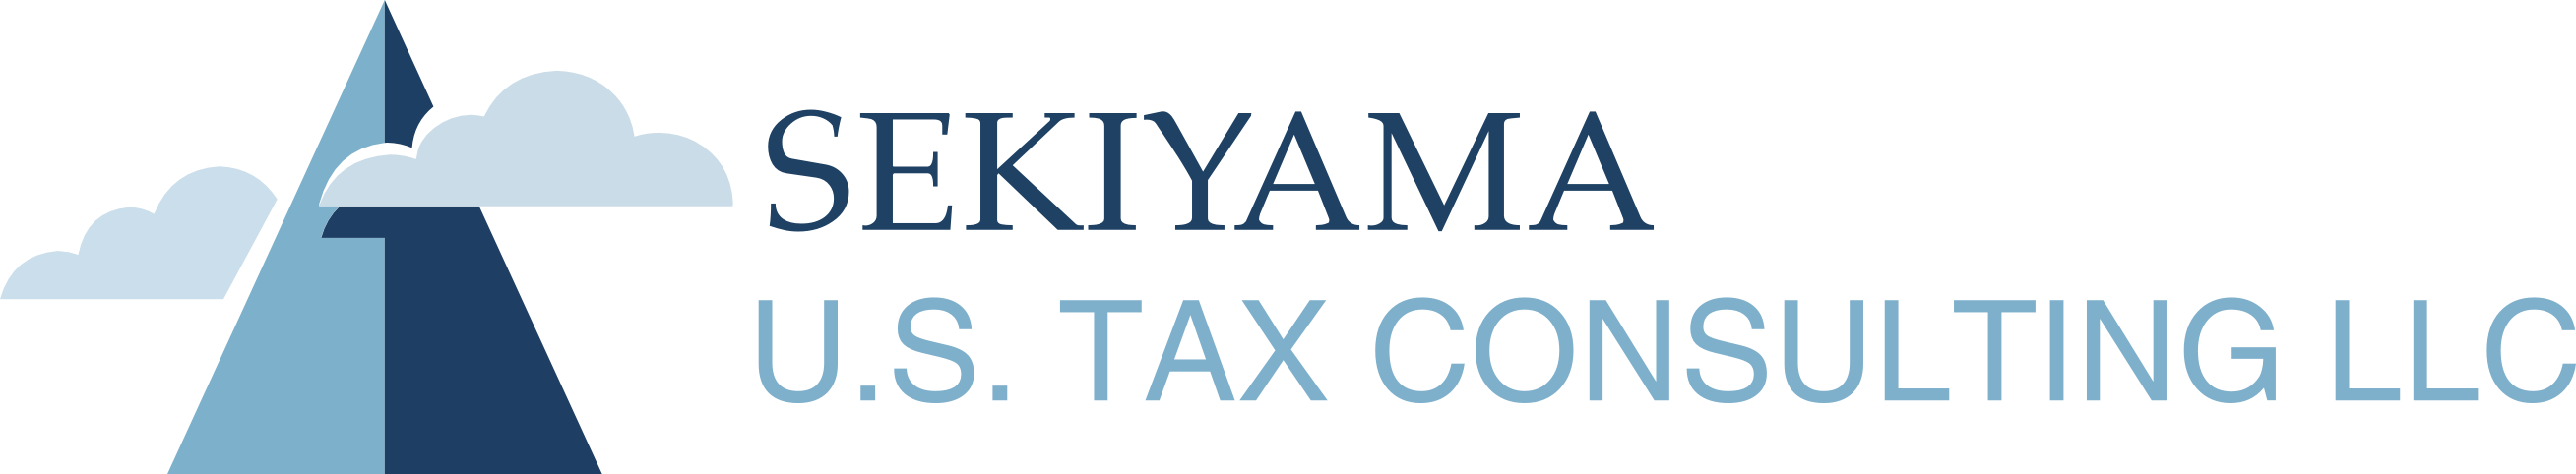 SEKIYAMA U.S. TAX CONSULTING LLC